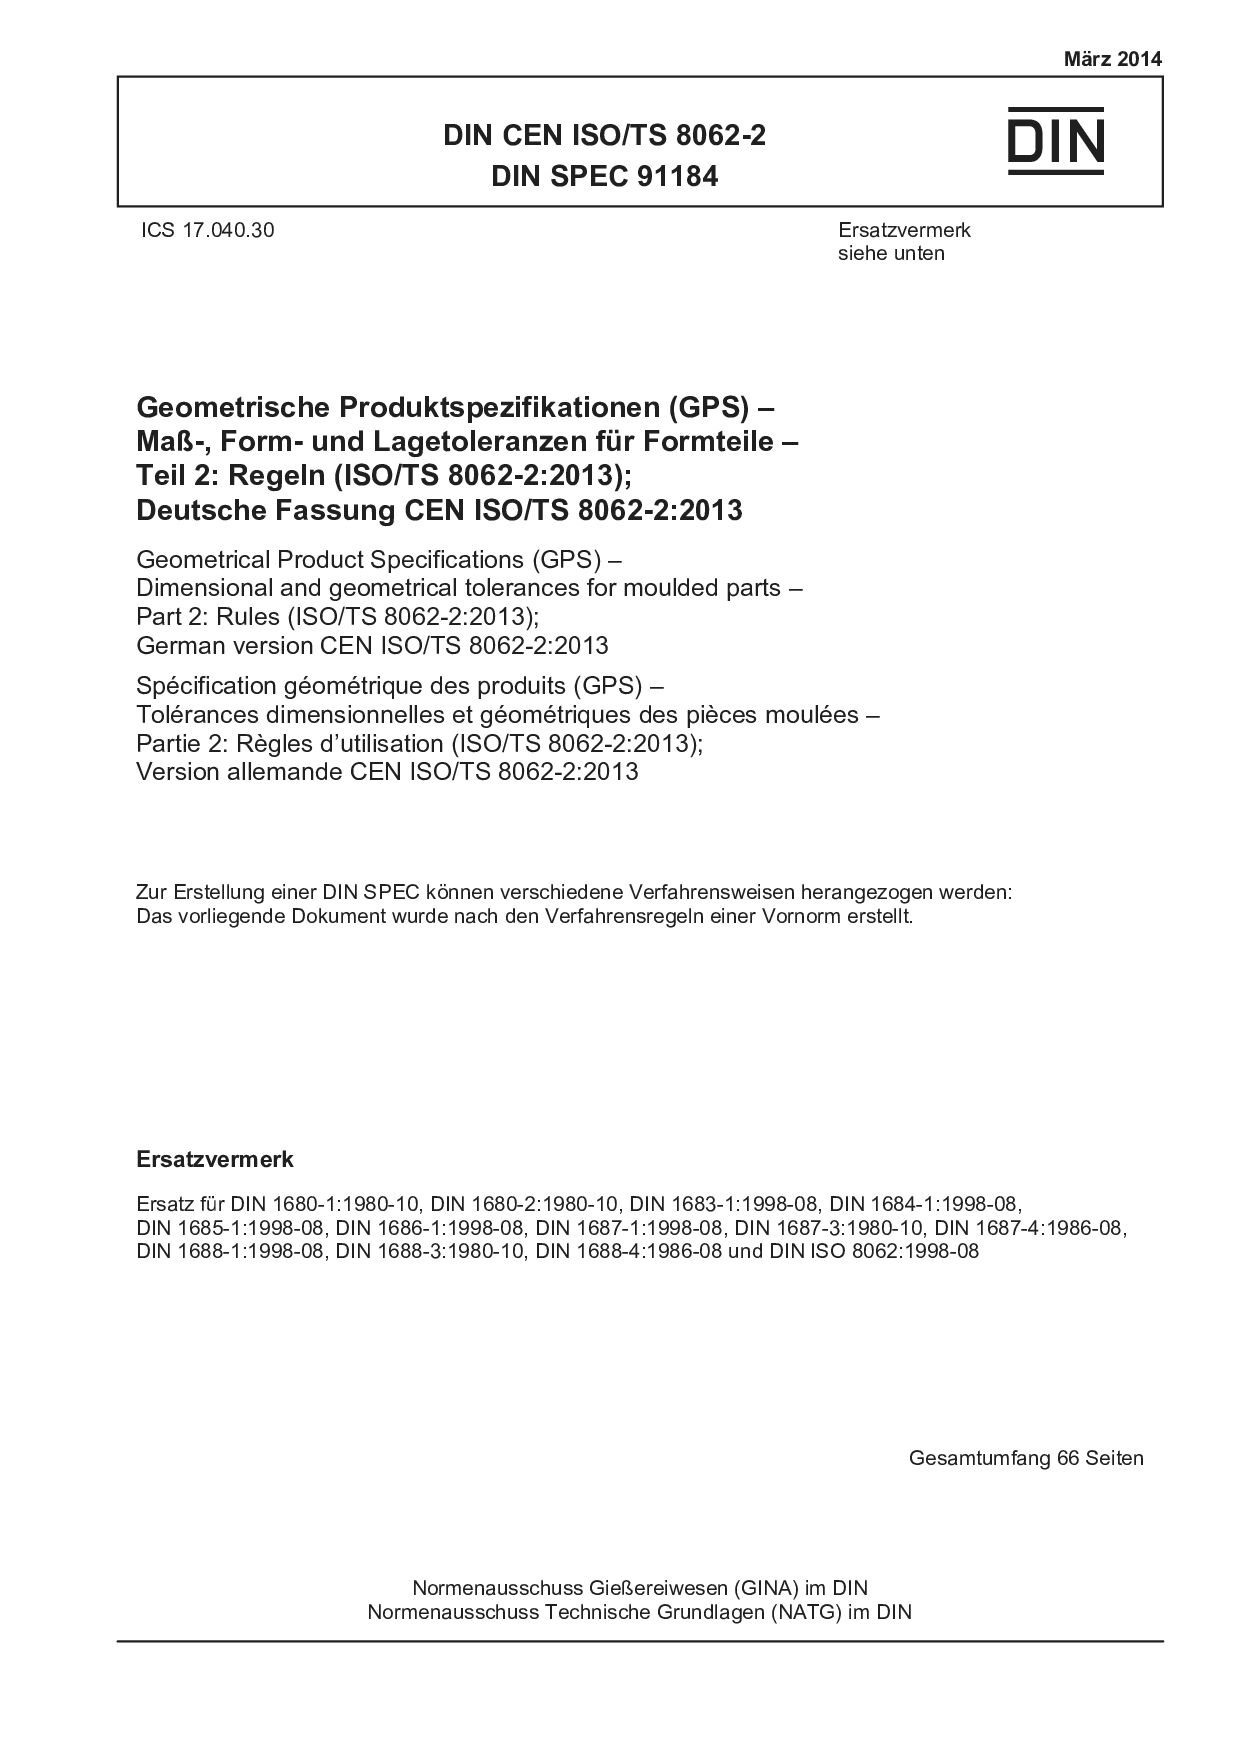 DIN CEN ISO/TS 8062-2:2014